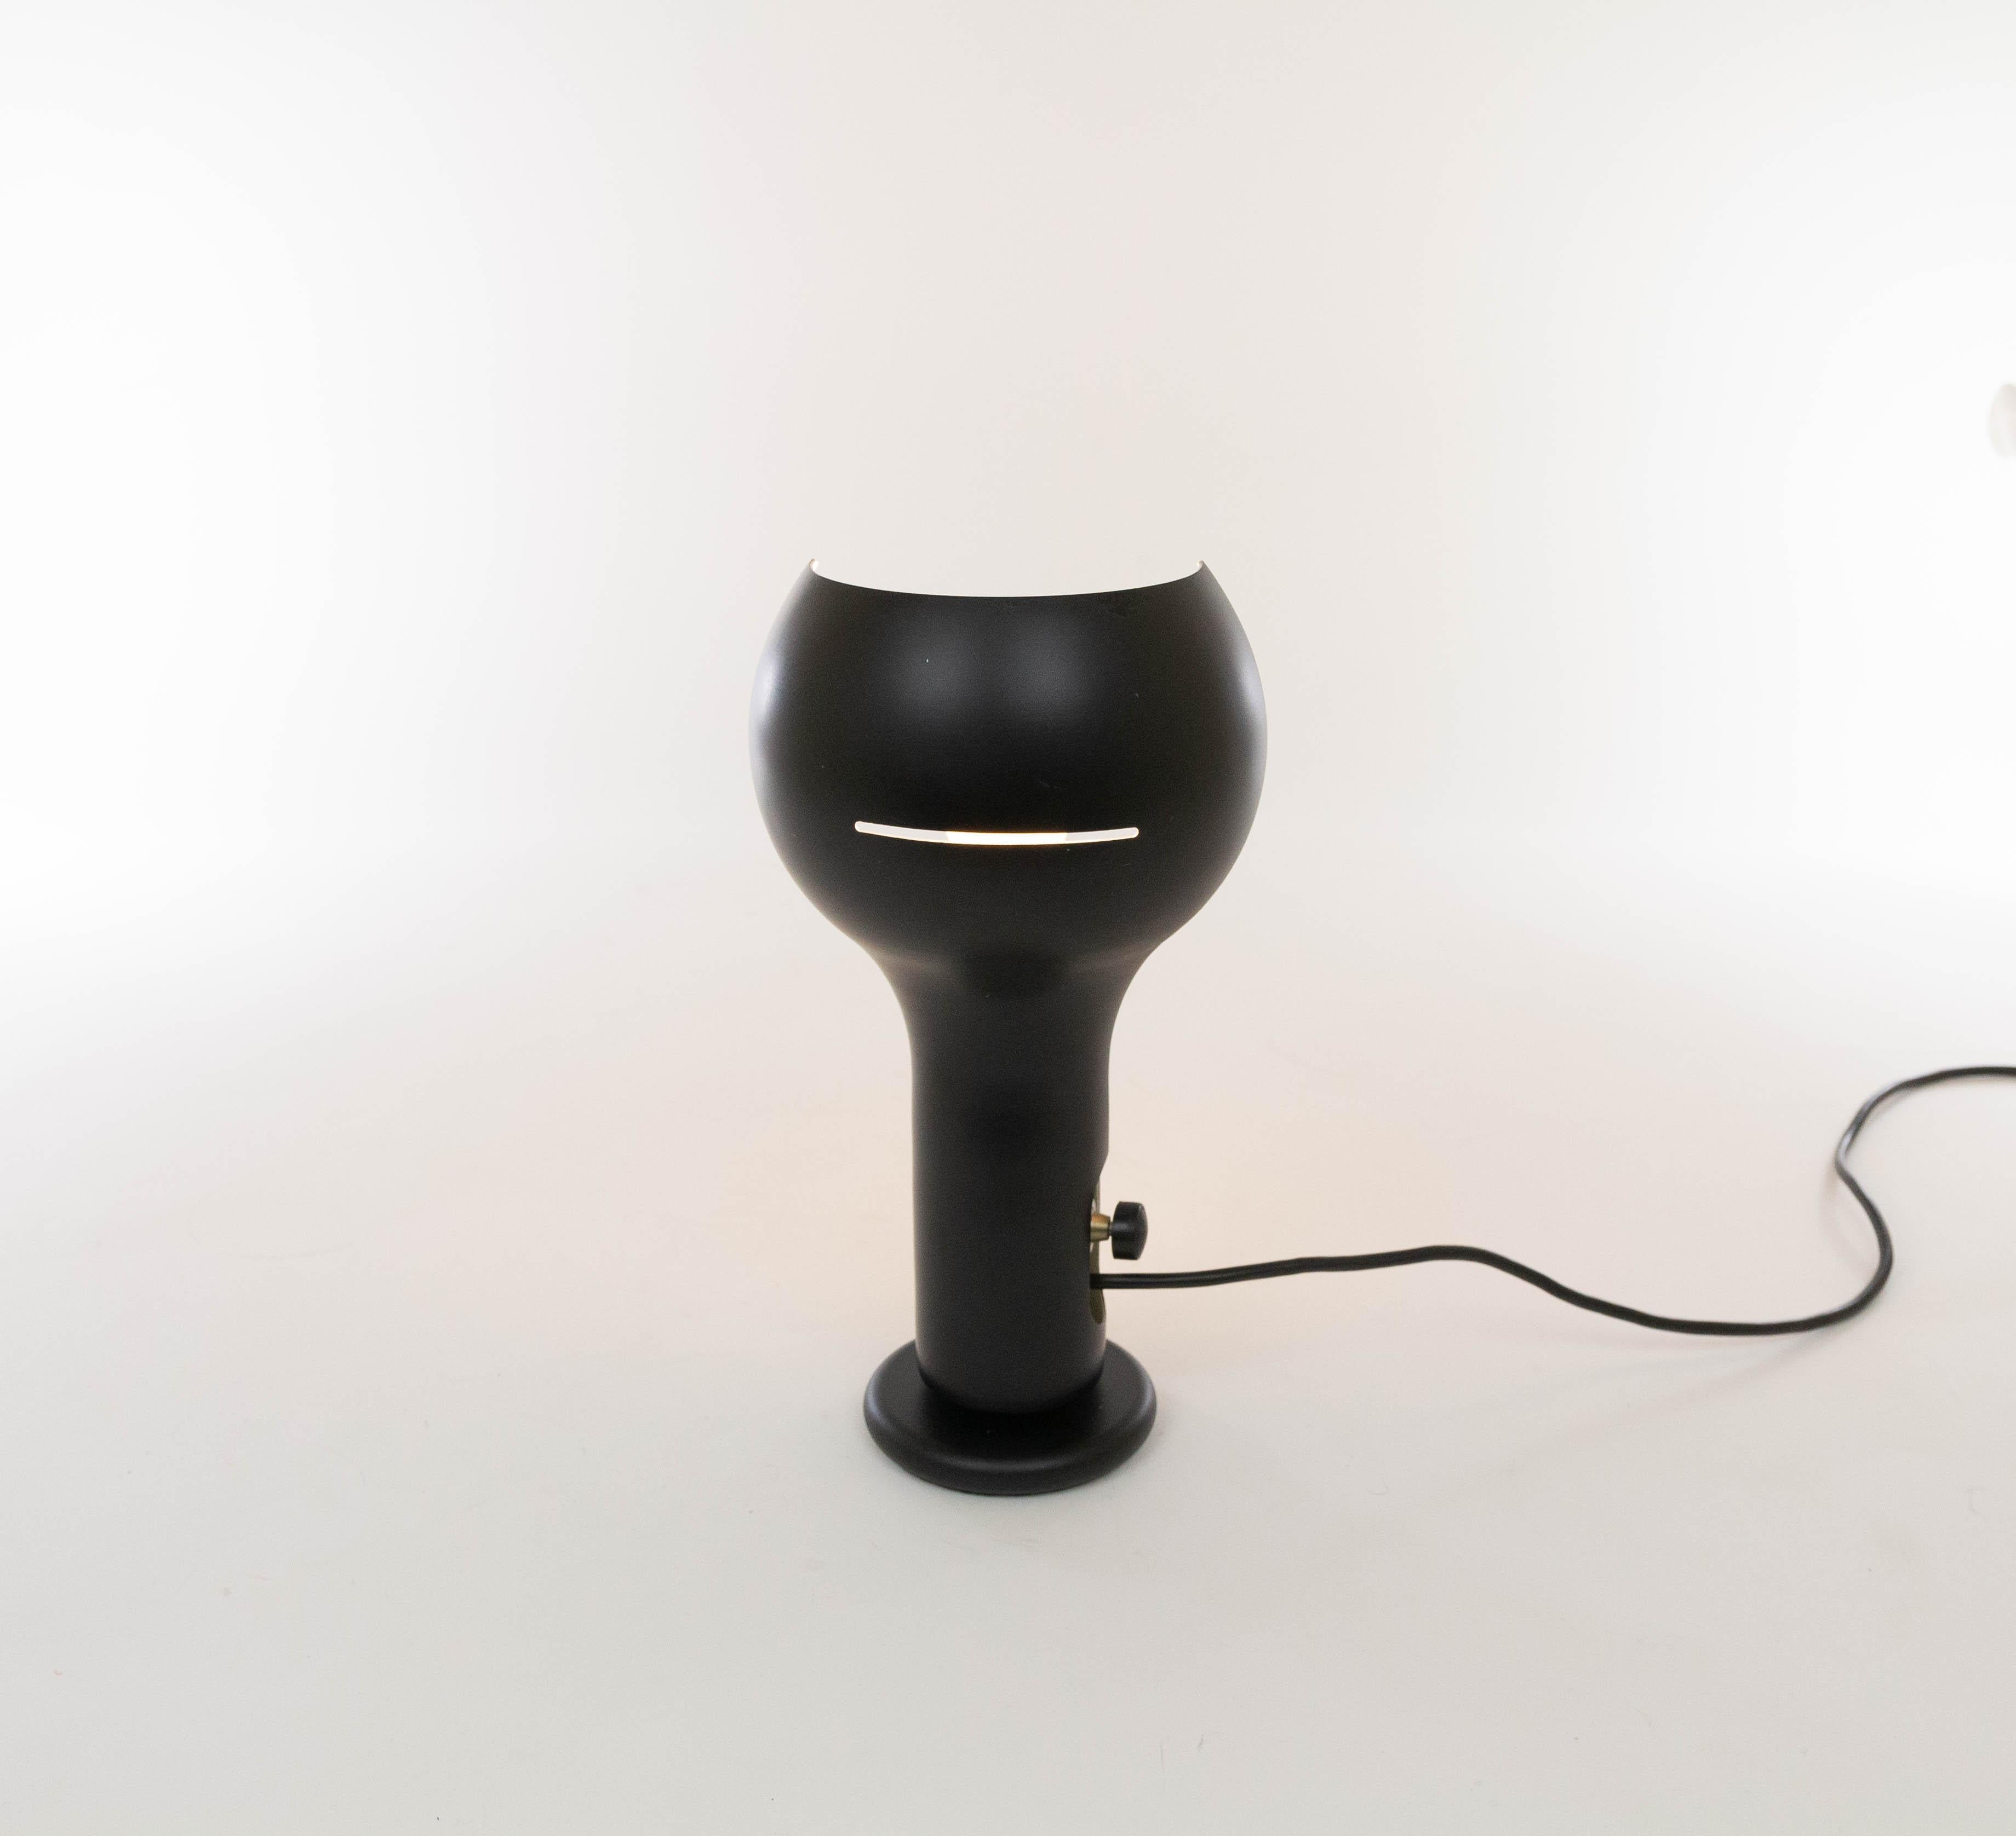 La lampe de table Flash modèle 2207 conçue par Joe Colombo pour O-Luce reflète l'esprit d'innovation de son créateur.

Flash a été conçu comme un système d'éclairage bien pensé, composé d'une large gamme de lampes murales, de plafonniers, de